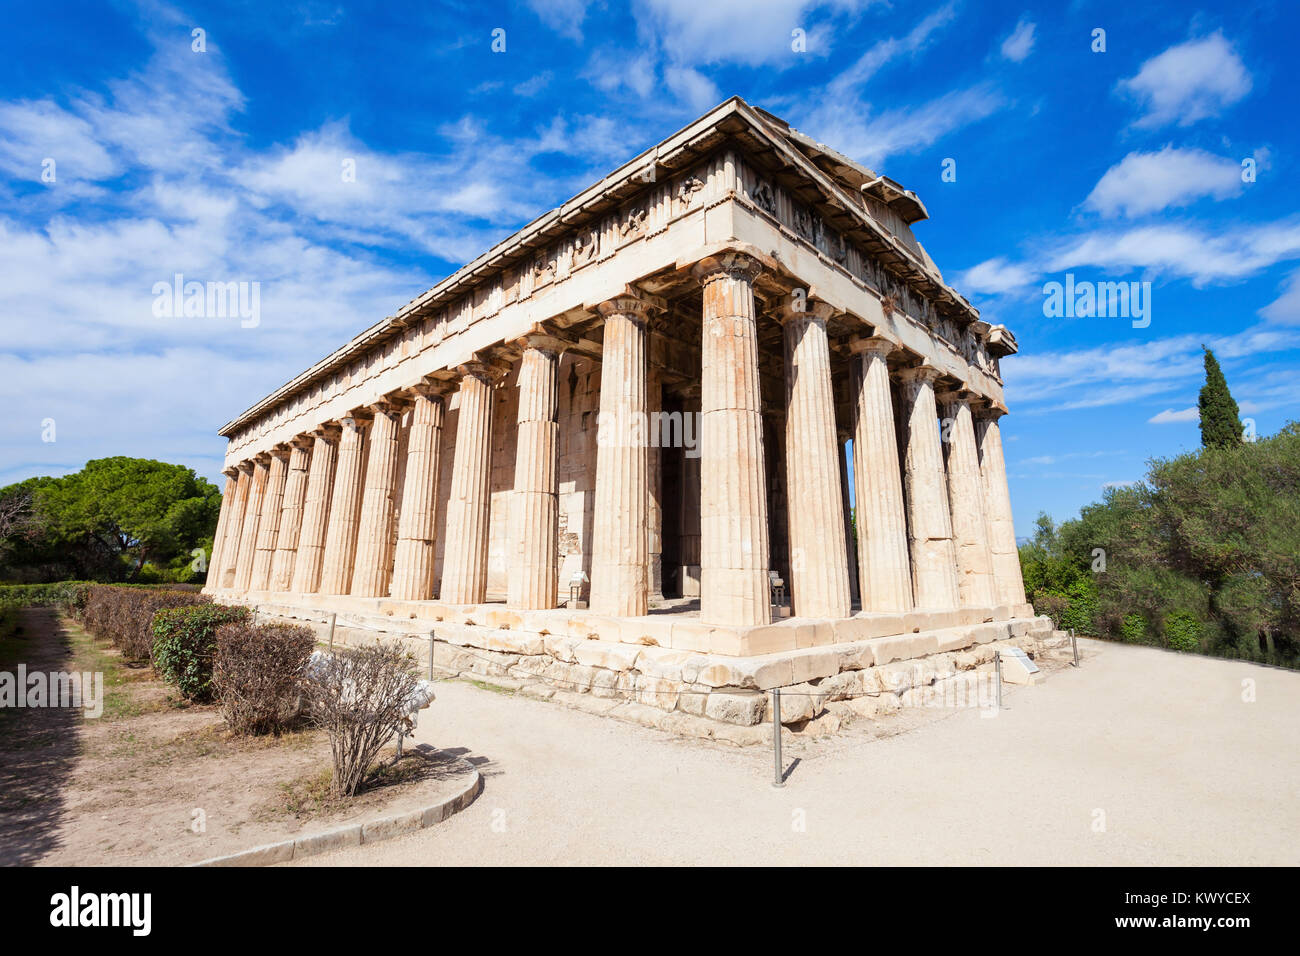 Le Temple d'Héphaïstos ou aussi Hephesteum Hephaisteion est un temple grec dorique, situé au nord-ouest de l'Agora d'Athènes Banque D'Images